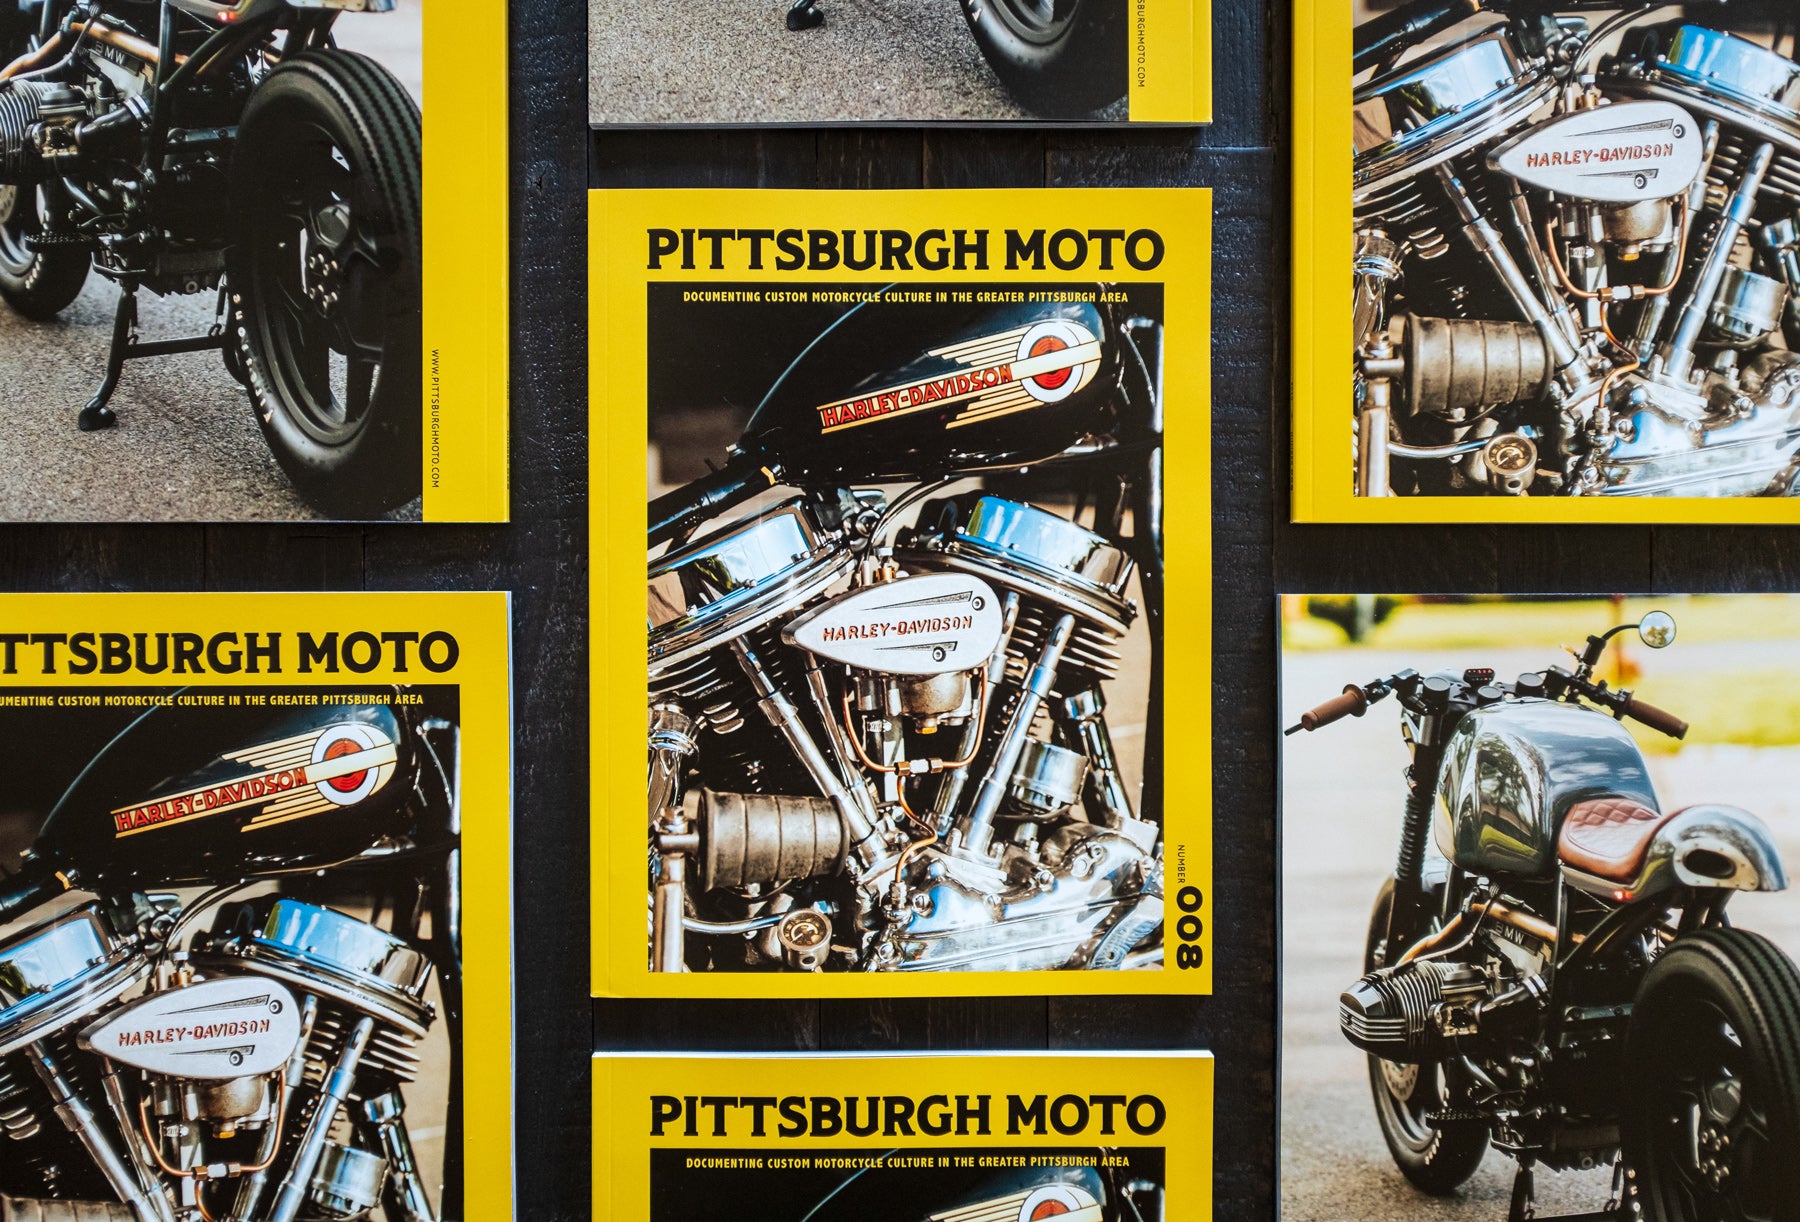 Pittsburgh Moto magazine issue 8 Kurt Diserio editor designer